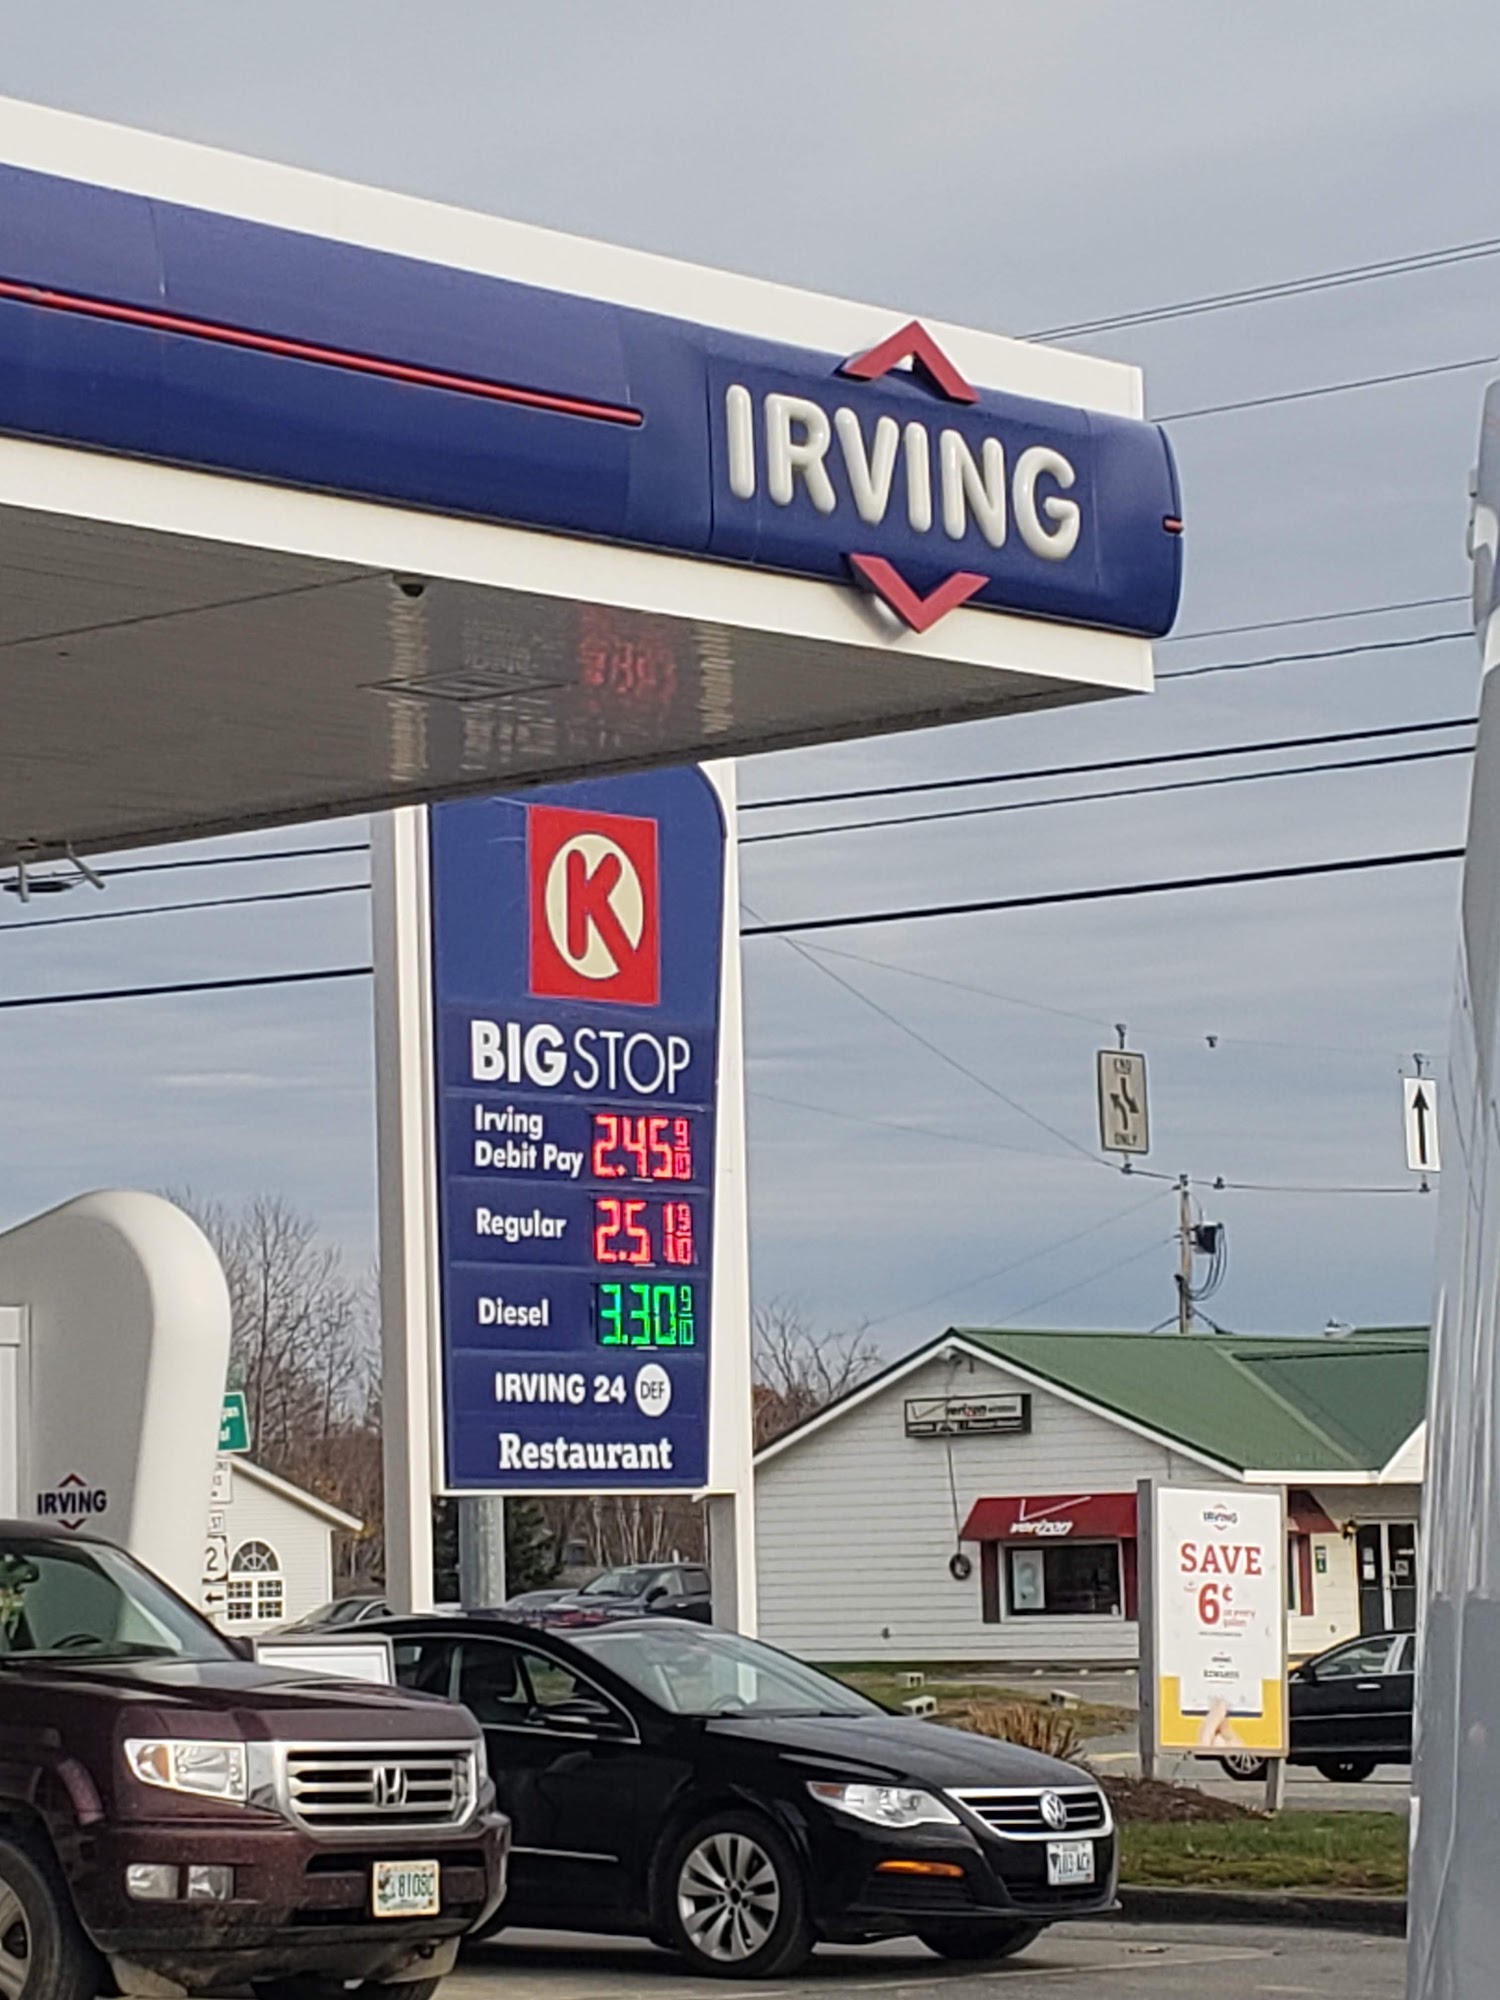 Irving Oil